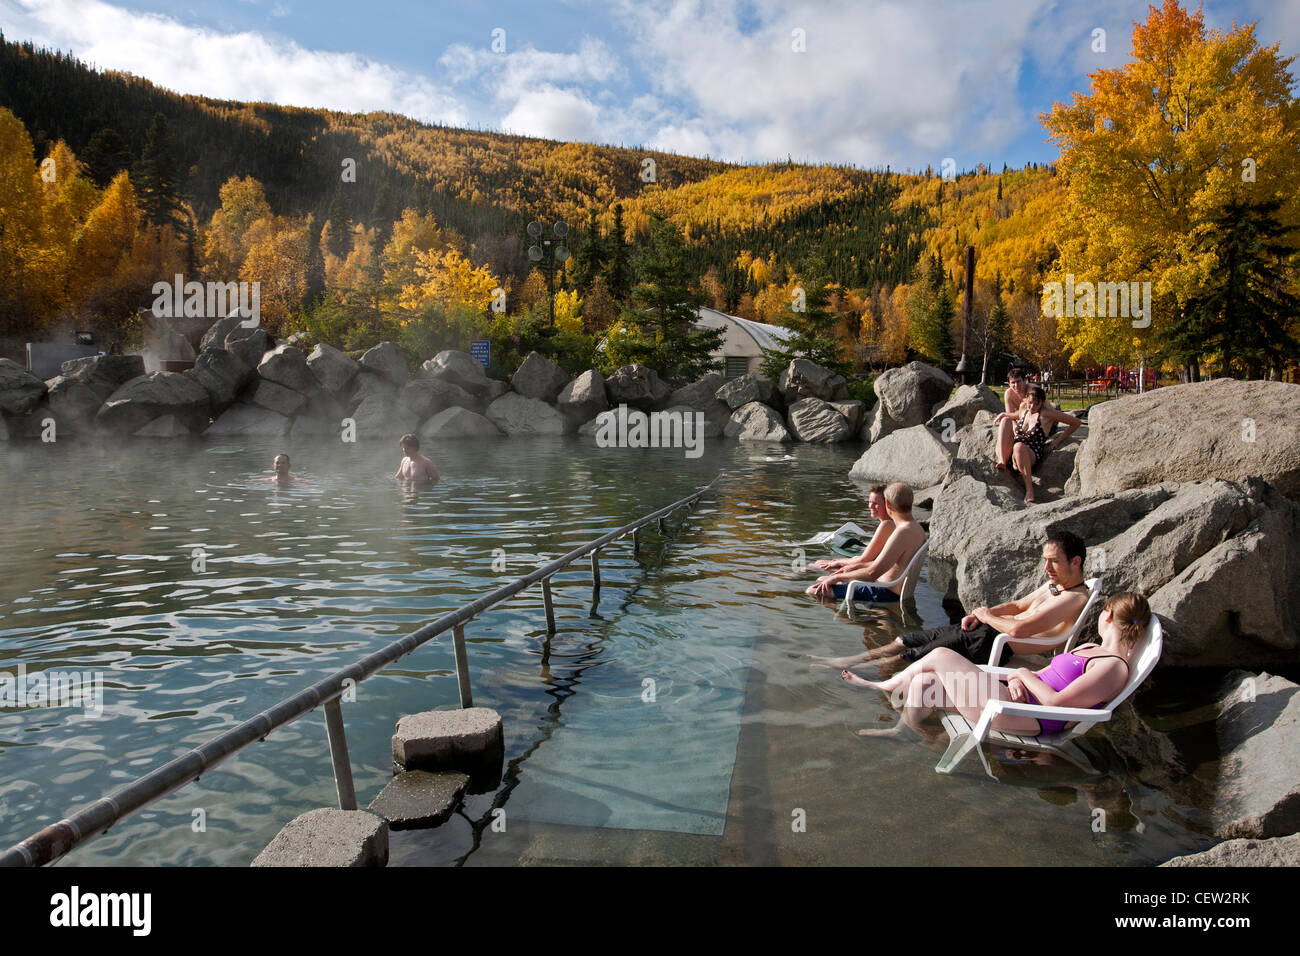 Persone in ammollo nella piscina esterna. Chena Hot Springs. Vicino a Fairbanks. L'Alaska. Stati Uniti d'America Foto Stock